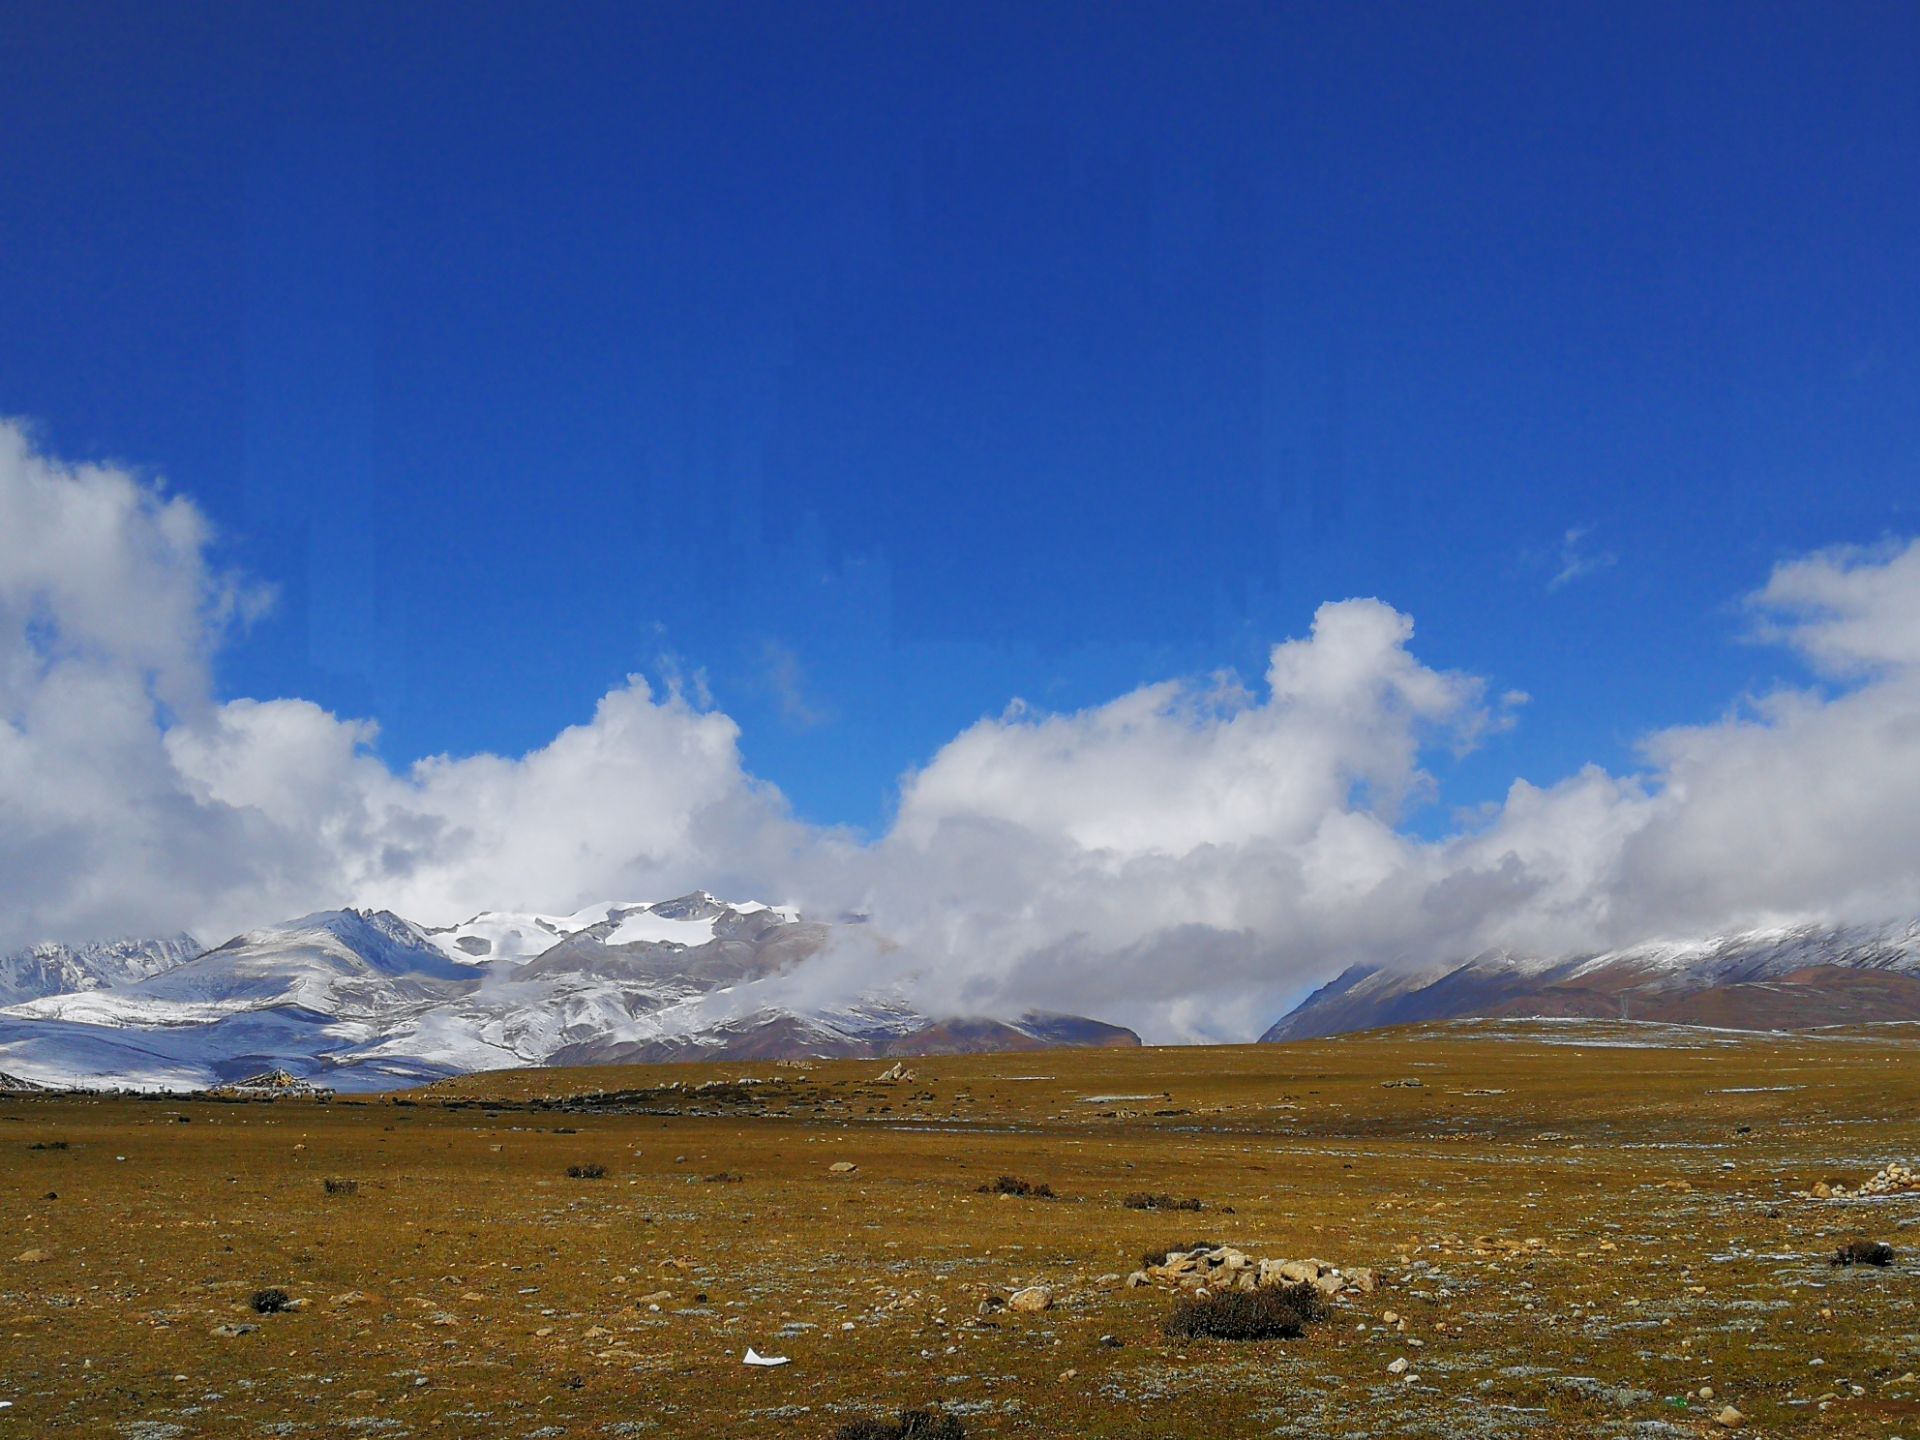 【携程攻略】当雄念青唐古拉观景台景点,念青唐古拉山是藏区神山之一